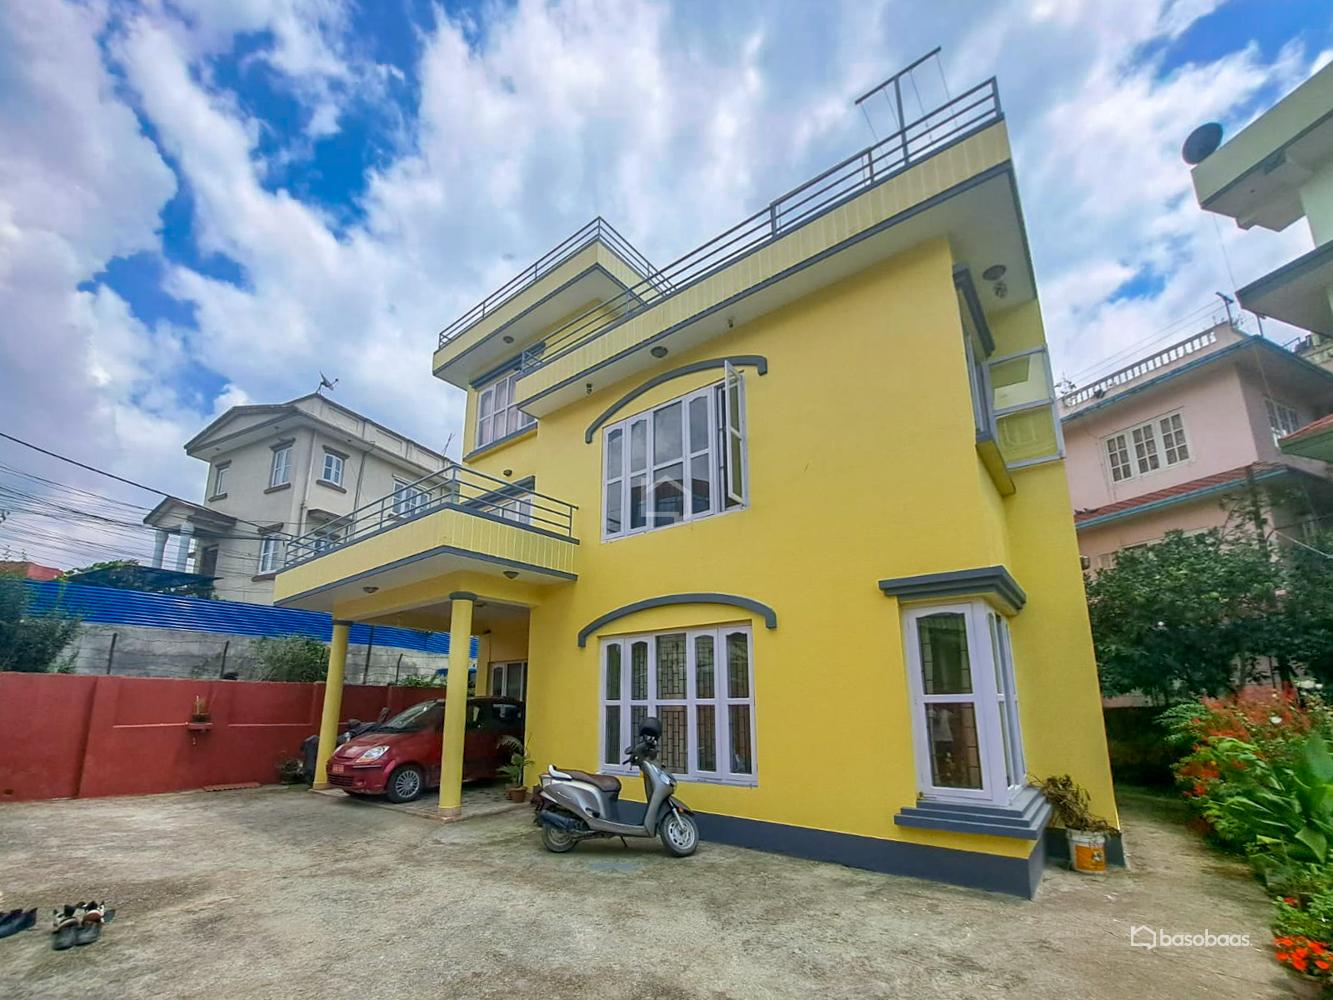 Residental : House for Sale in Nakkhu, Lalitpur Image 1